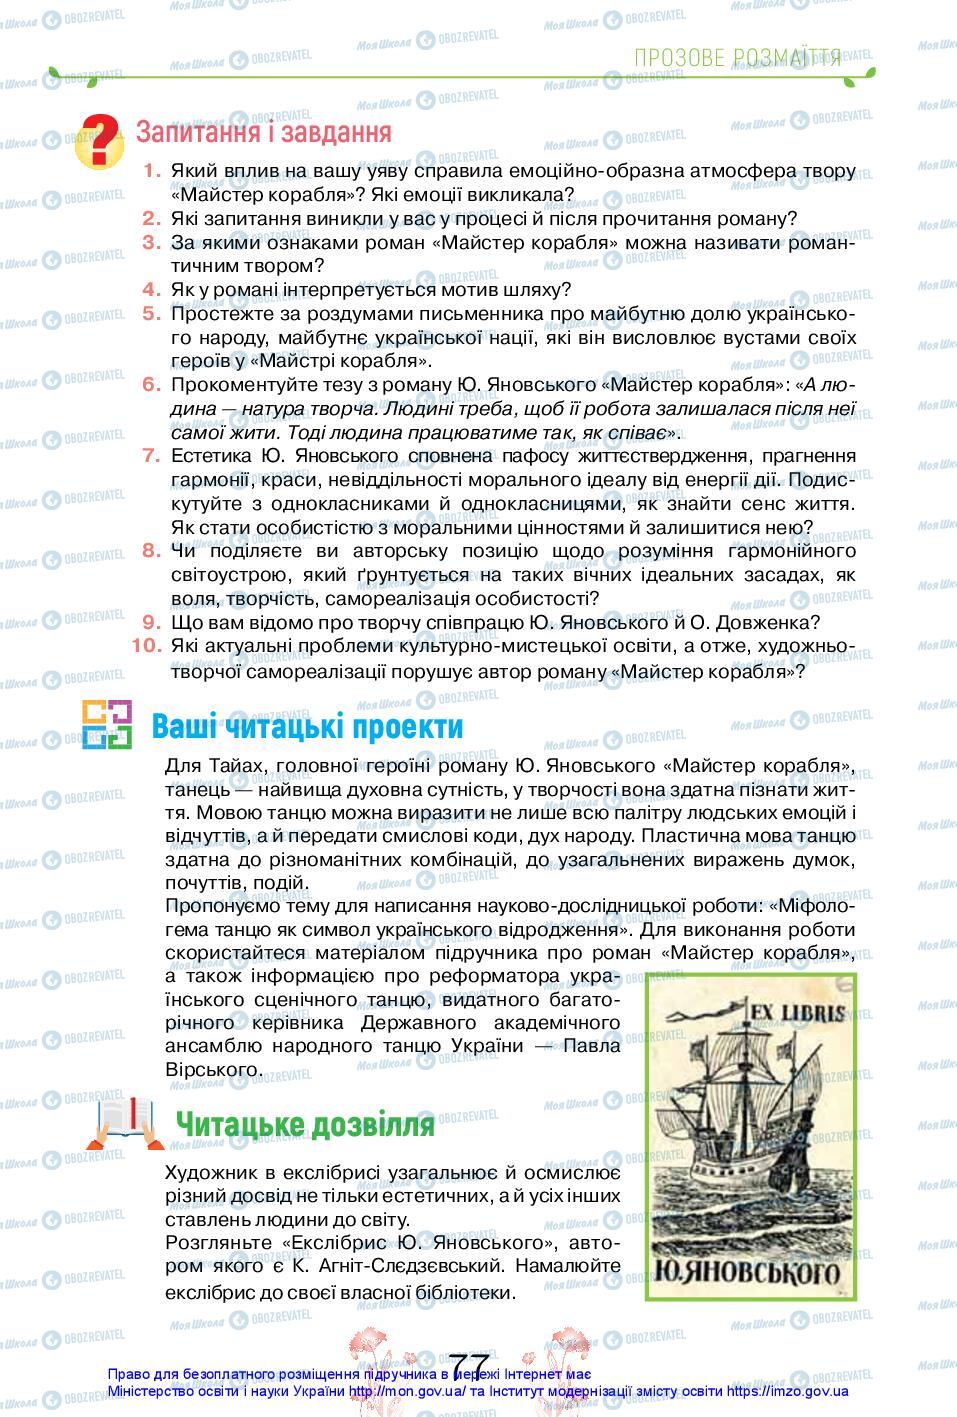 Підручники Українська література 11 клас сторінка 77